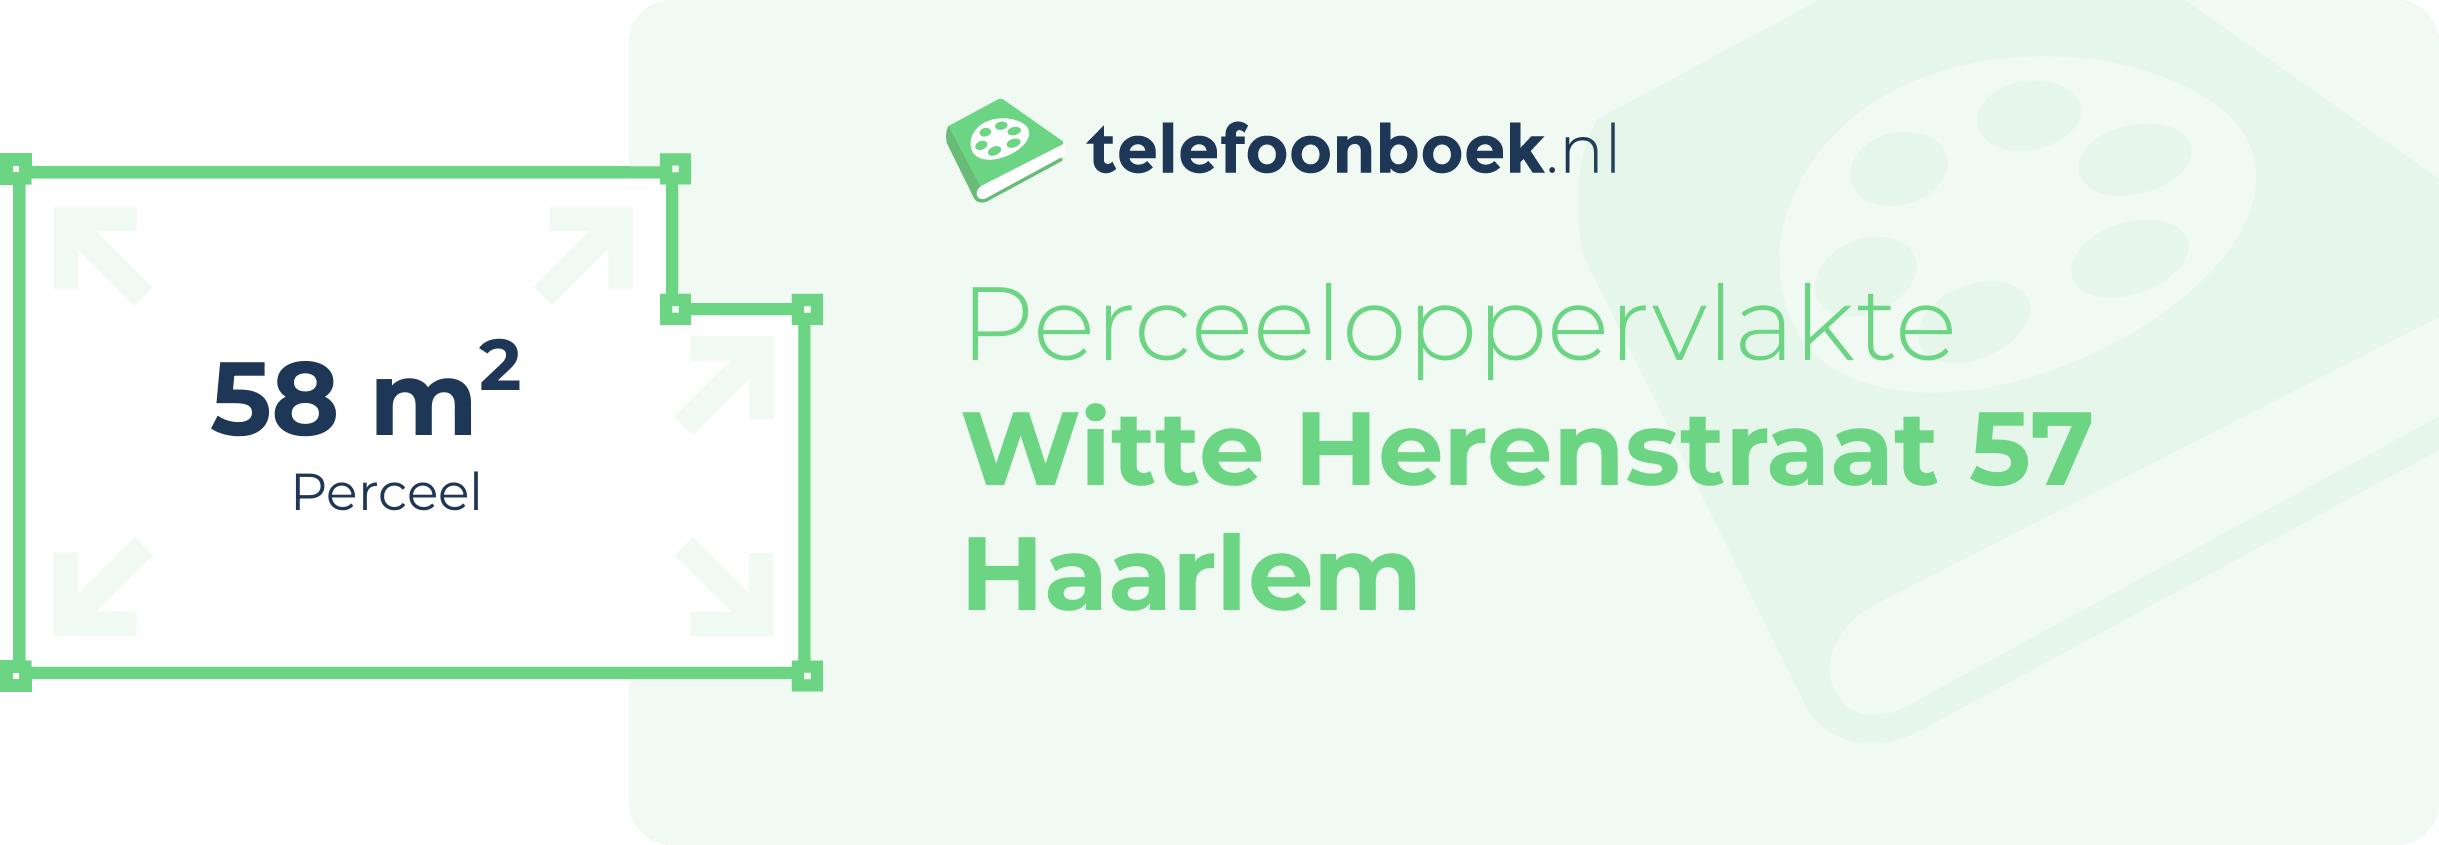 Perceeloppervlakte Witte Herenstraat 57 Haarlem